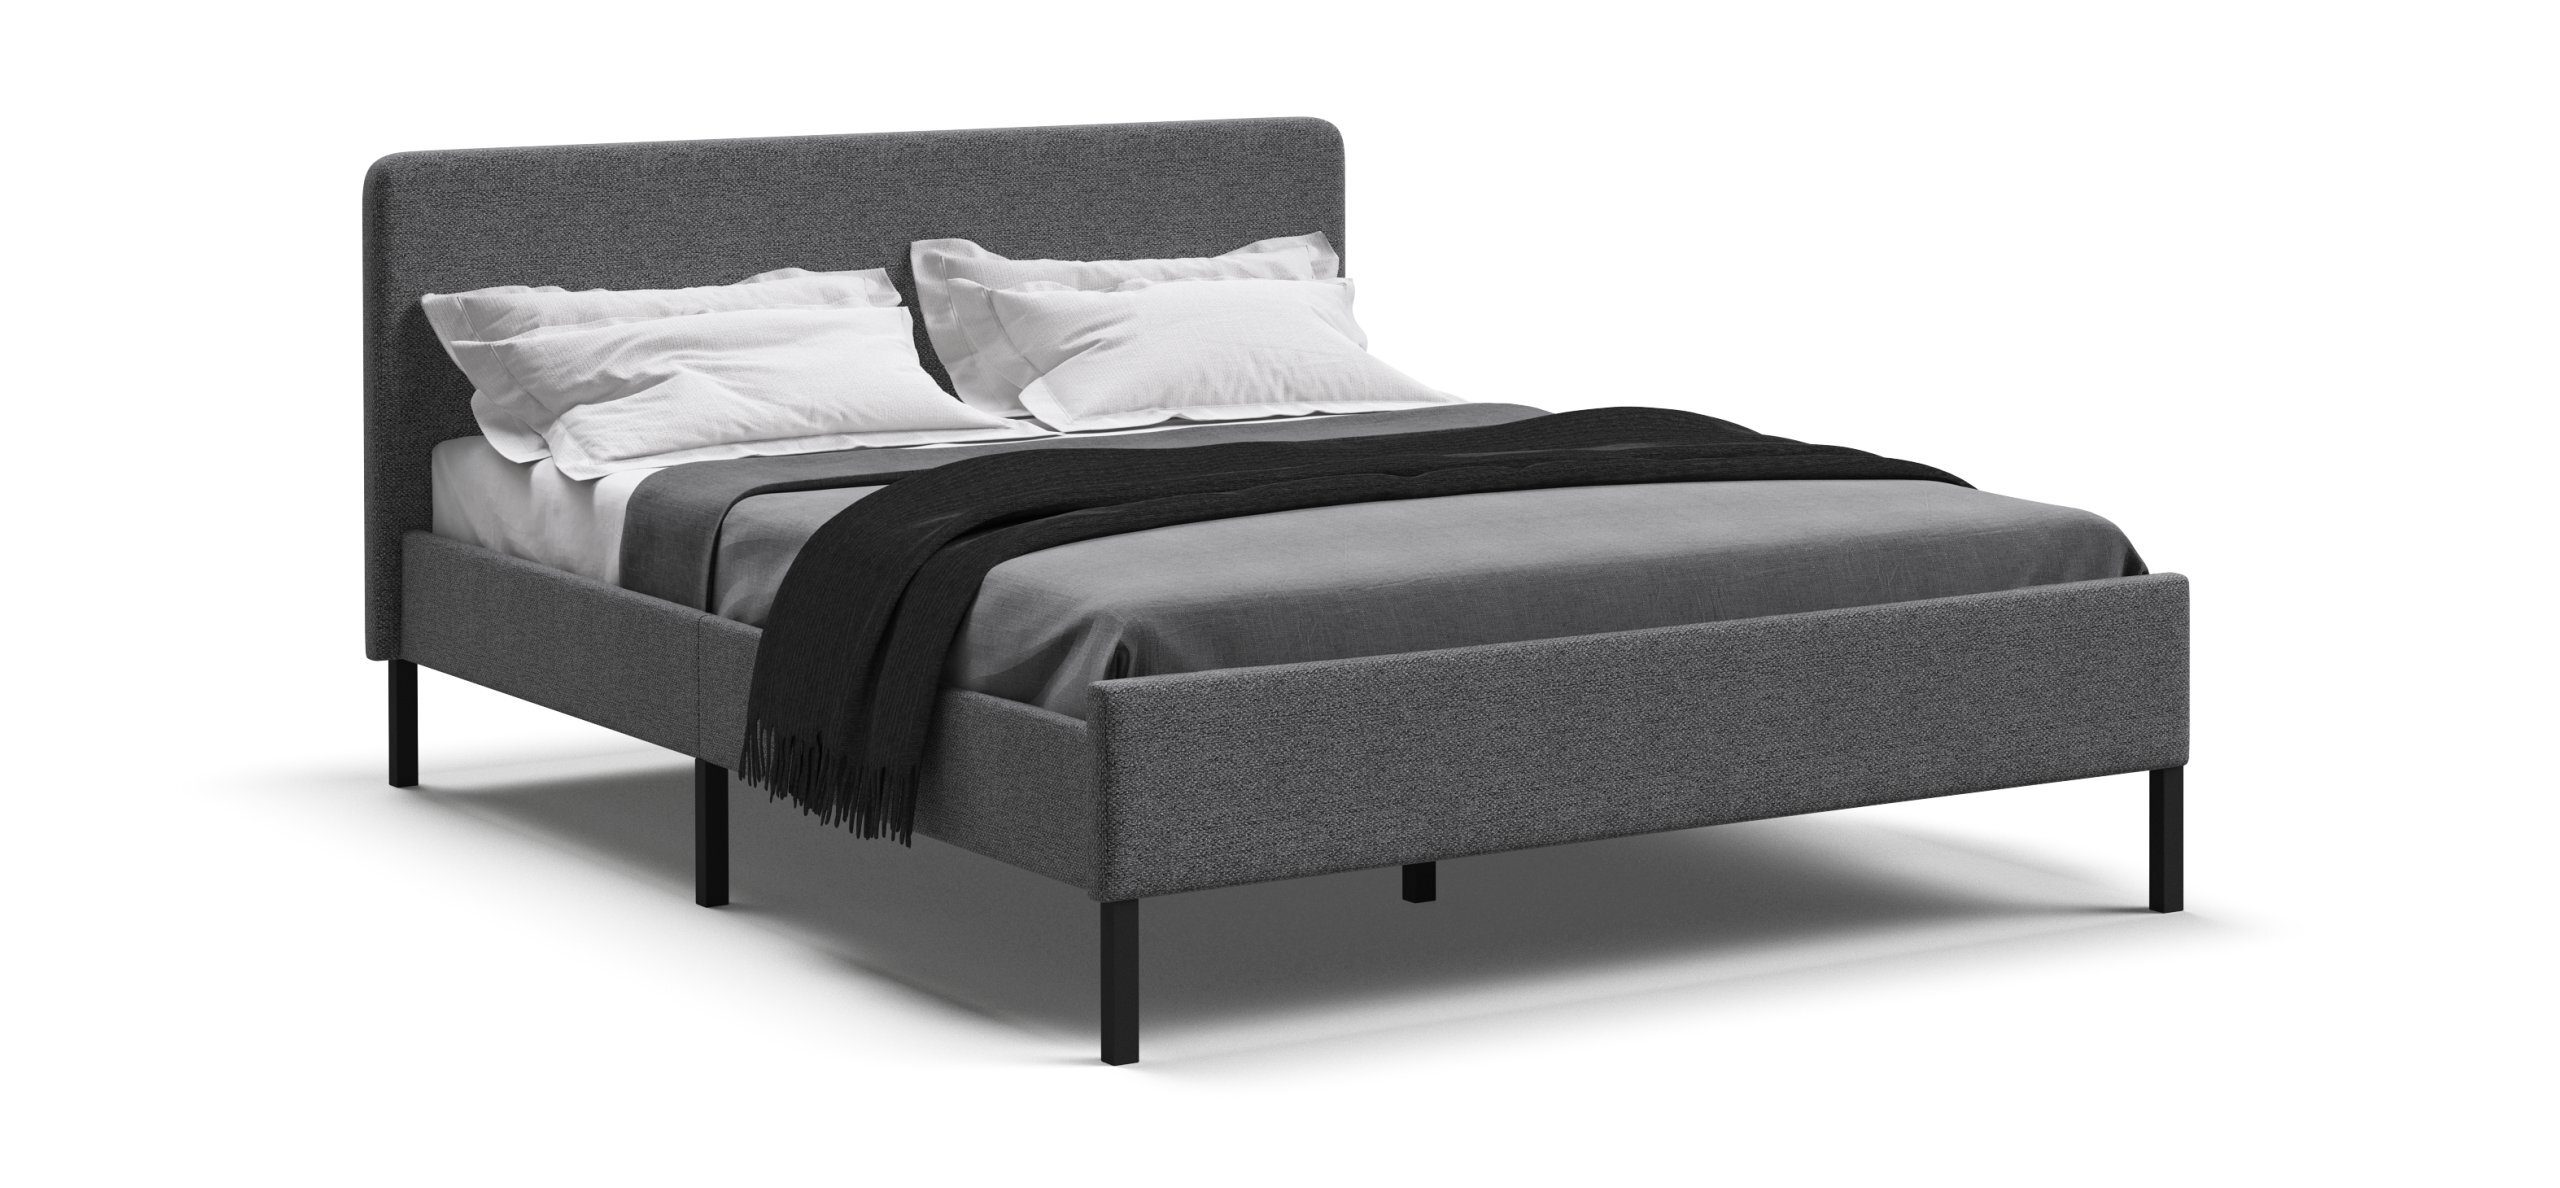 Двуспальная кровать Много Мебели УНА, рогожка Malmo серый/черный